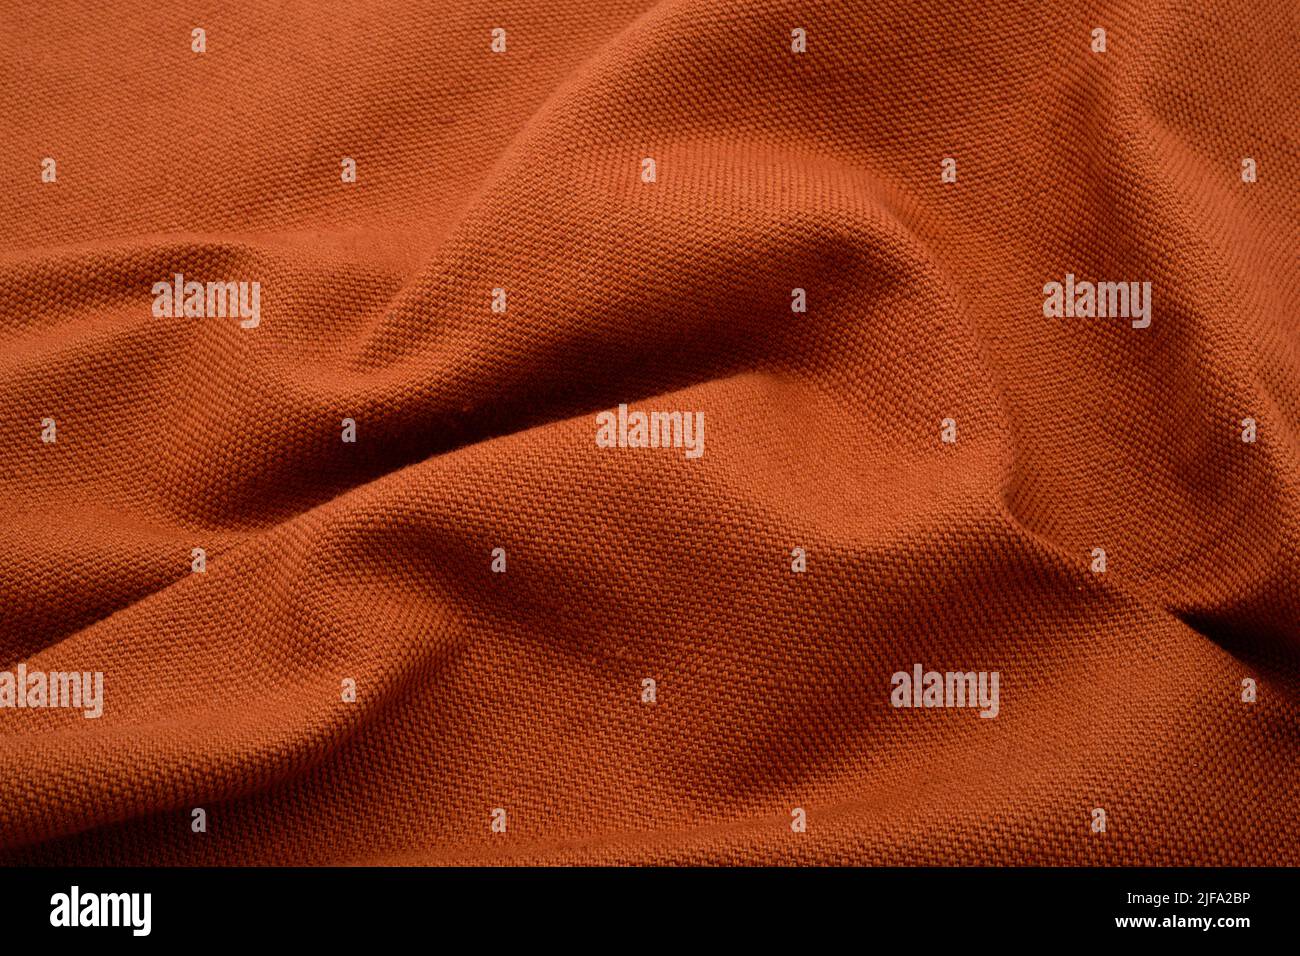 Fondo de tela texturizada. Un tejido fruncido de color naranja terroso. Foto de stock